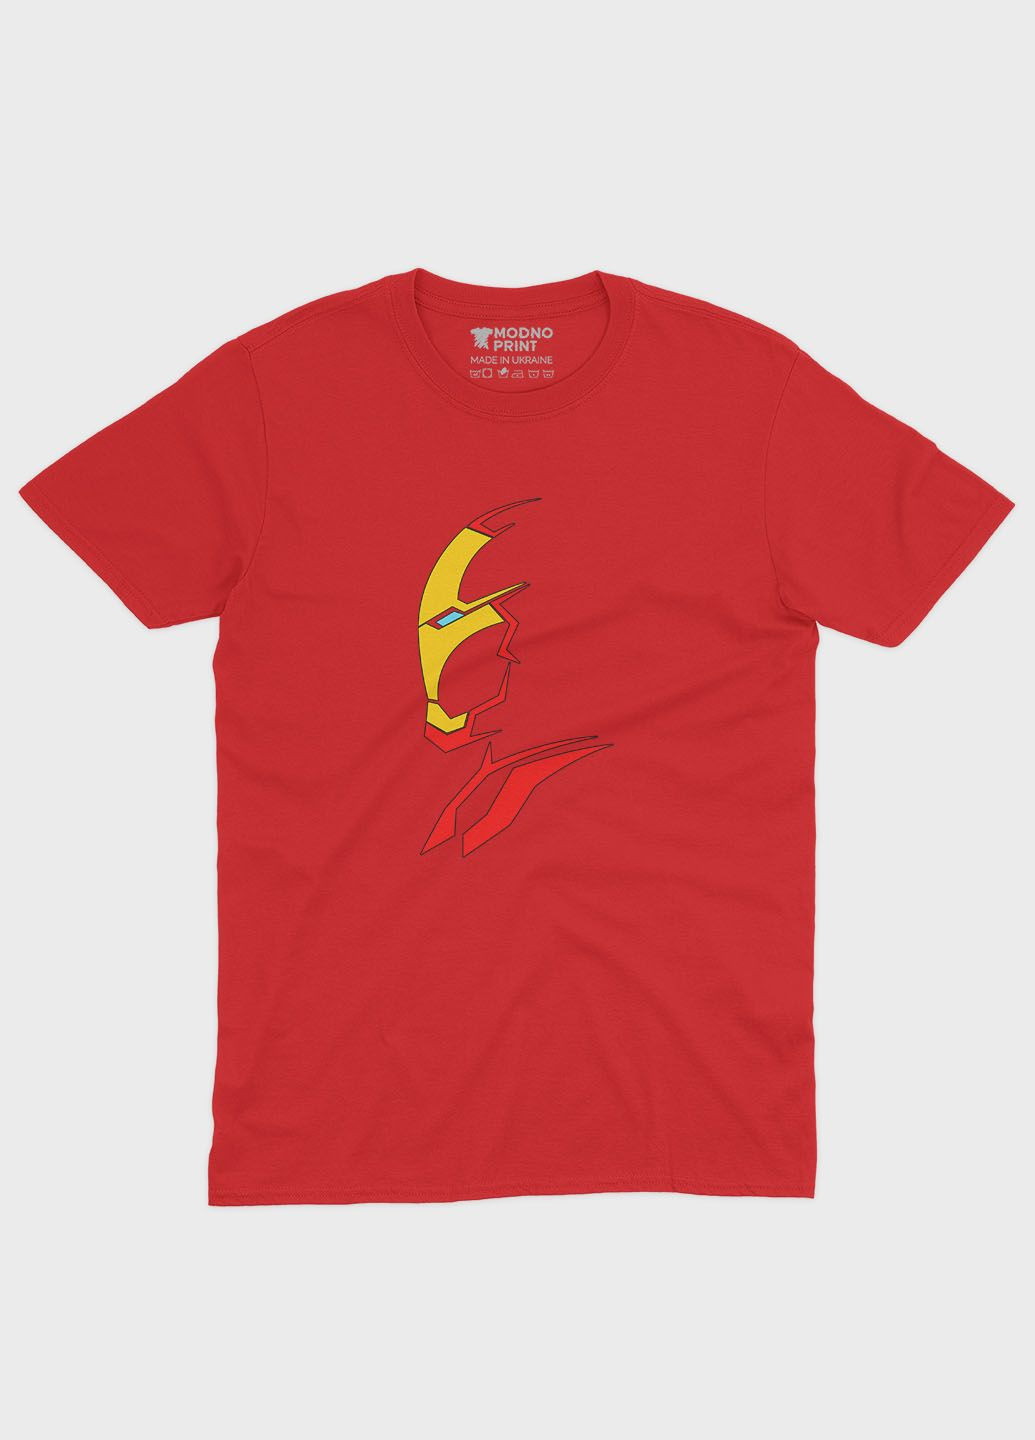 Красная демисезонная футболка для мальчика с принтом супергероя - железный человек (ts001-1-sre-006-016-020-b) Modno